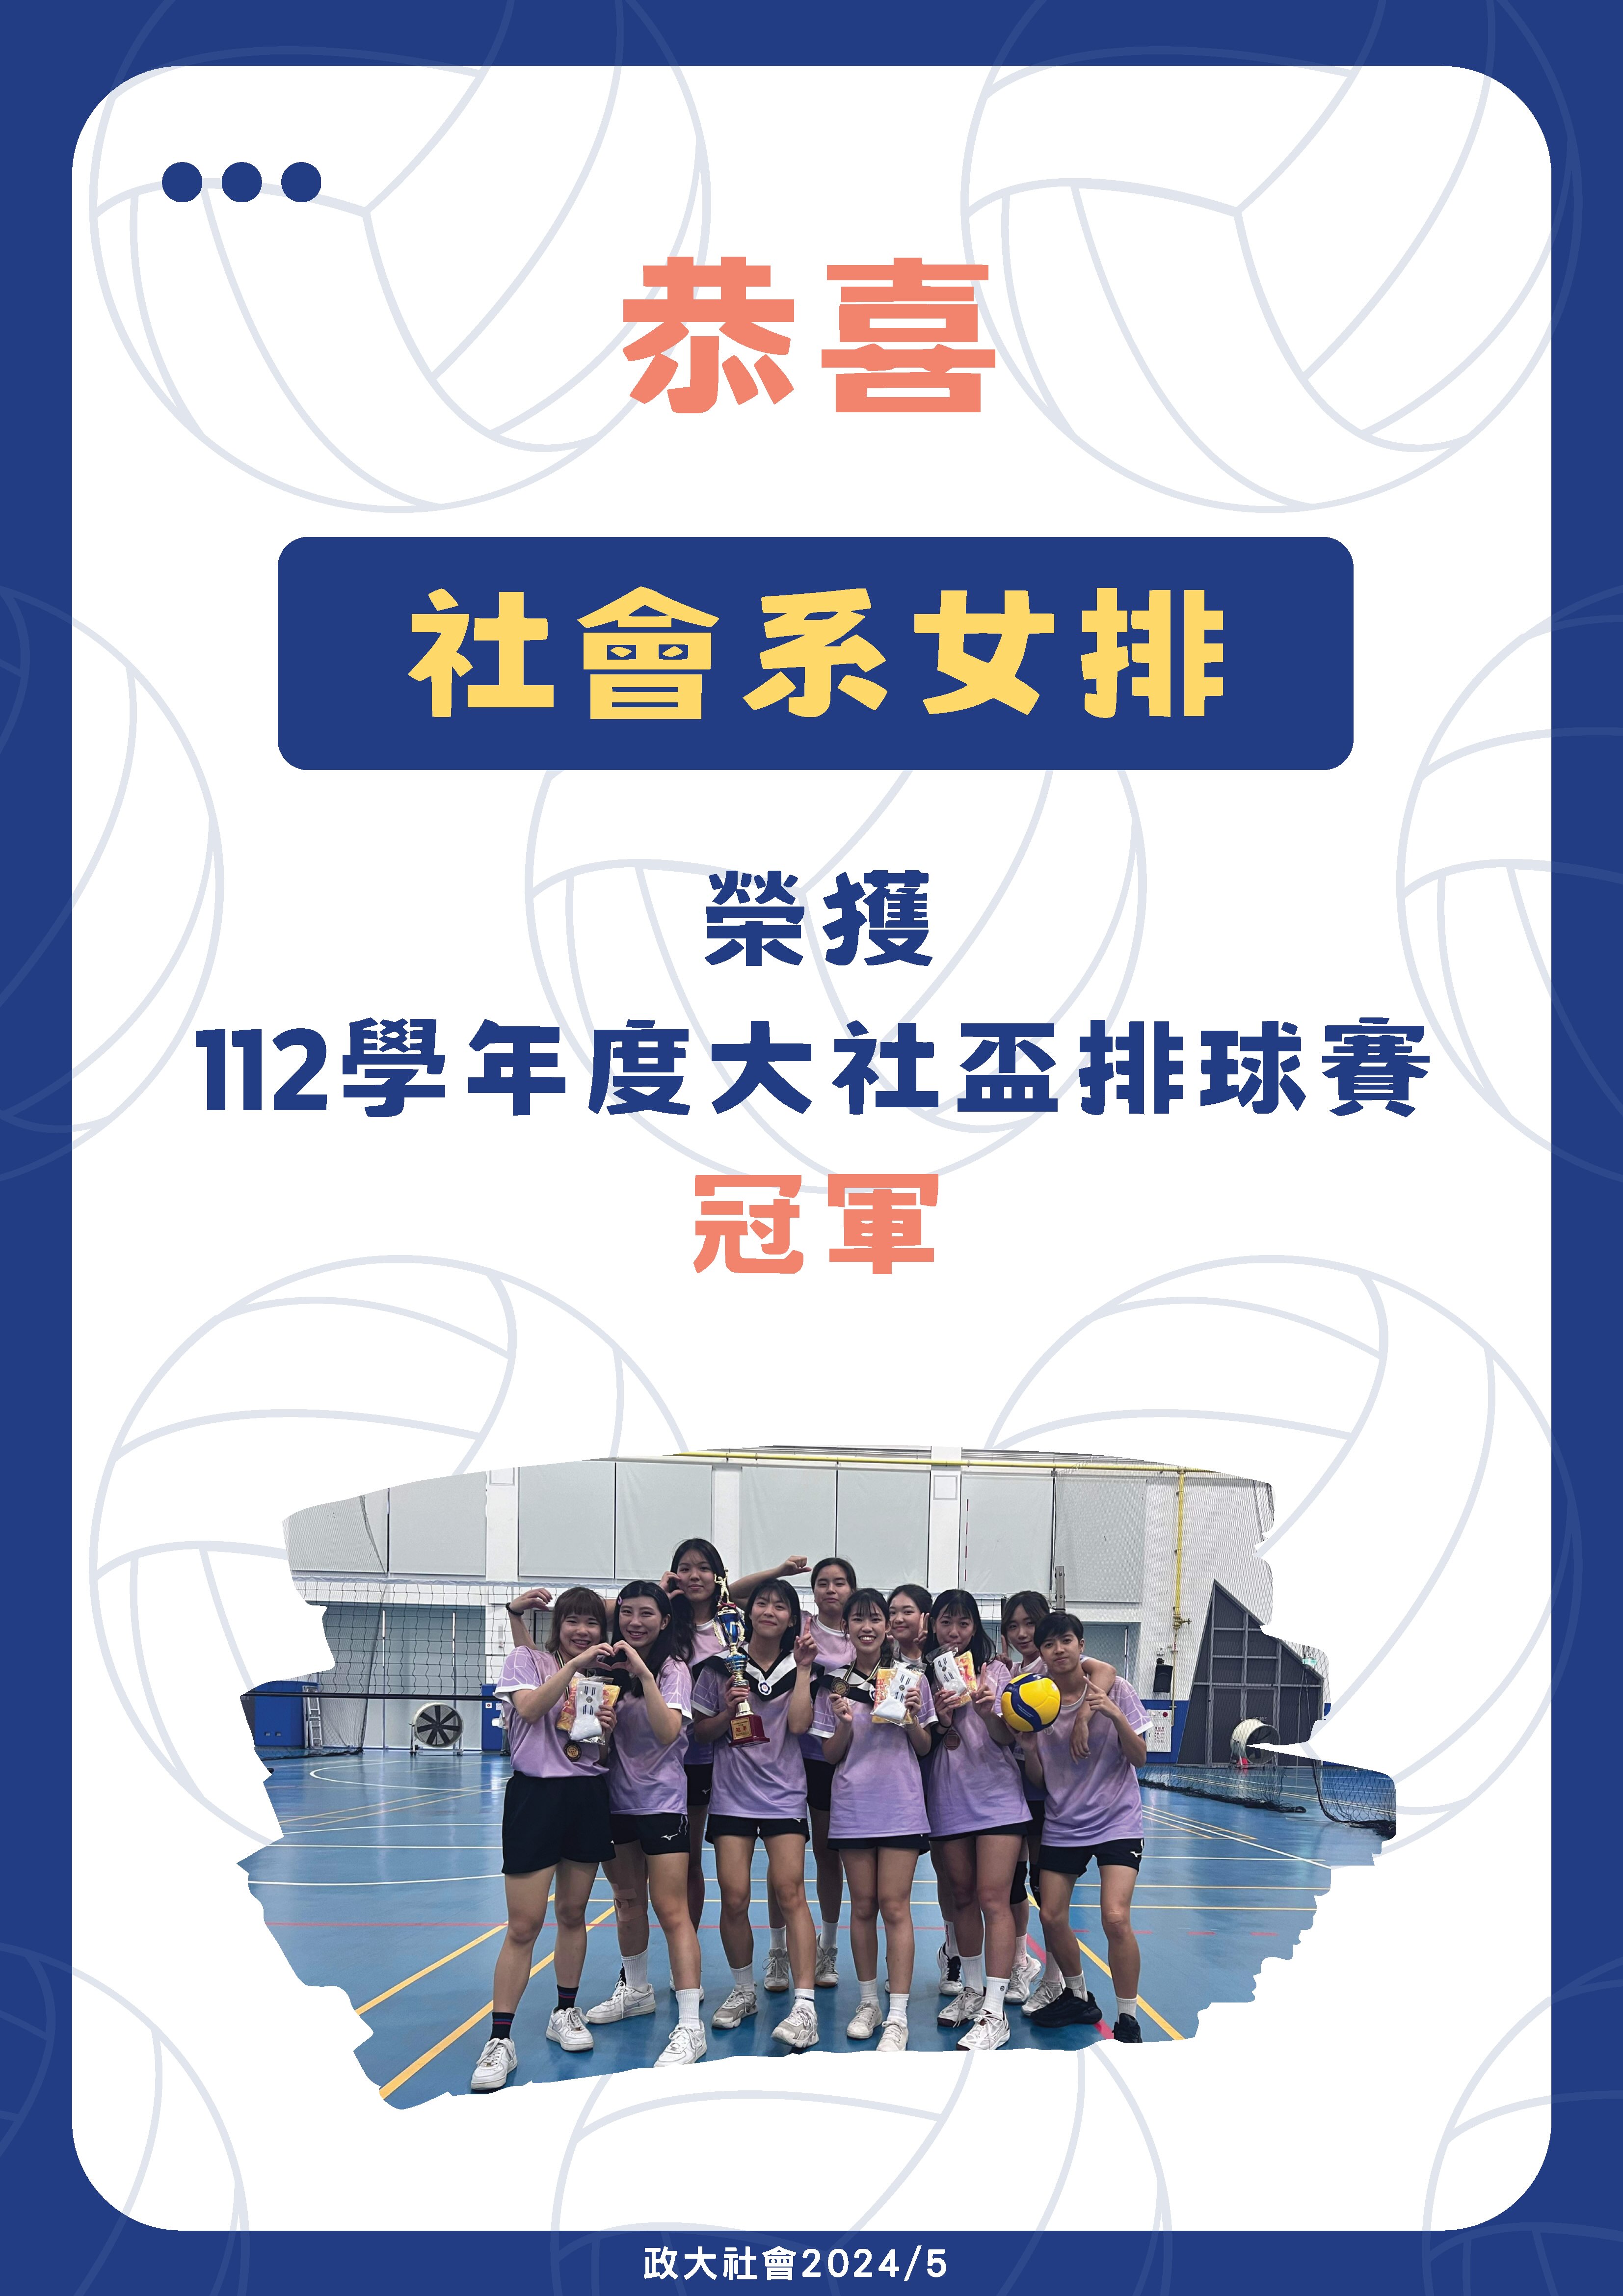 恭喜 本系女排 榮獲「112學年度大社盃排球賽冠軍」